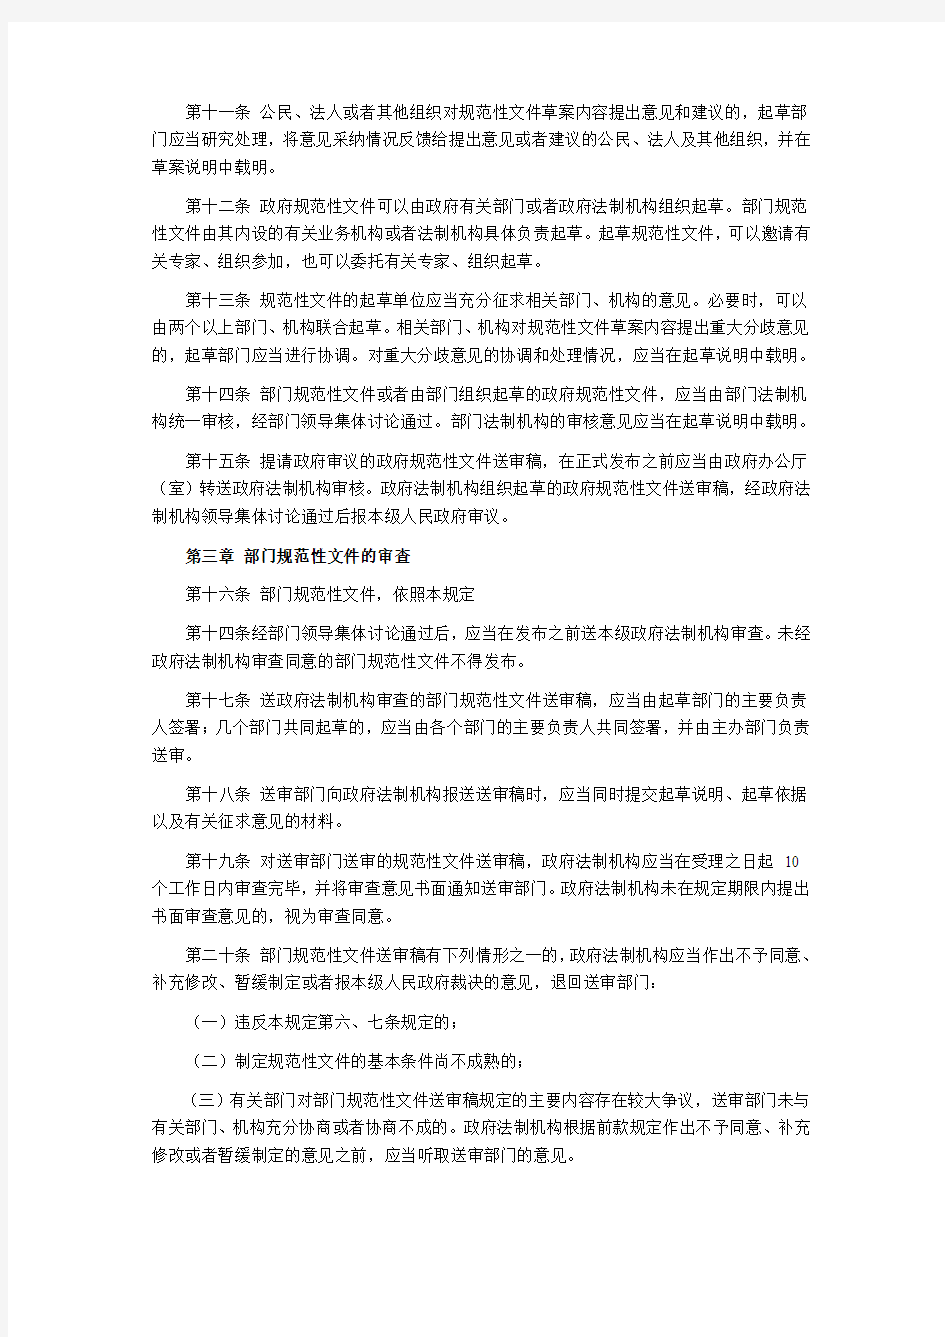 武汉市行政规范性文件管理规定